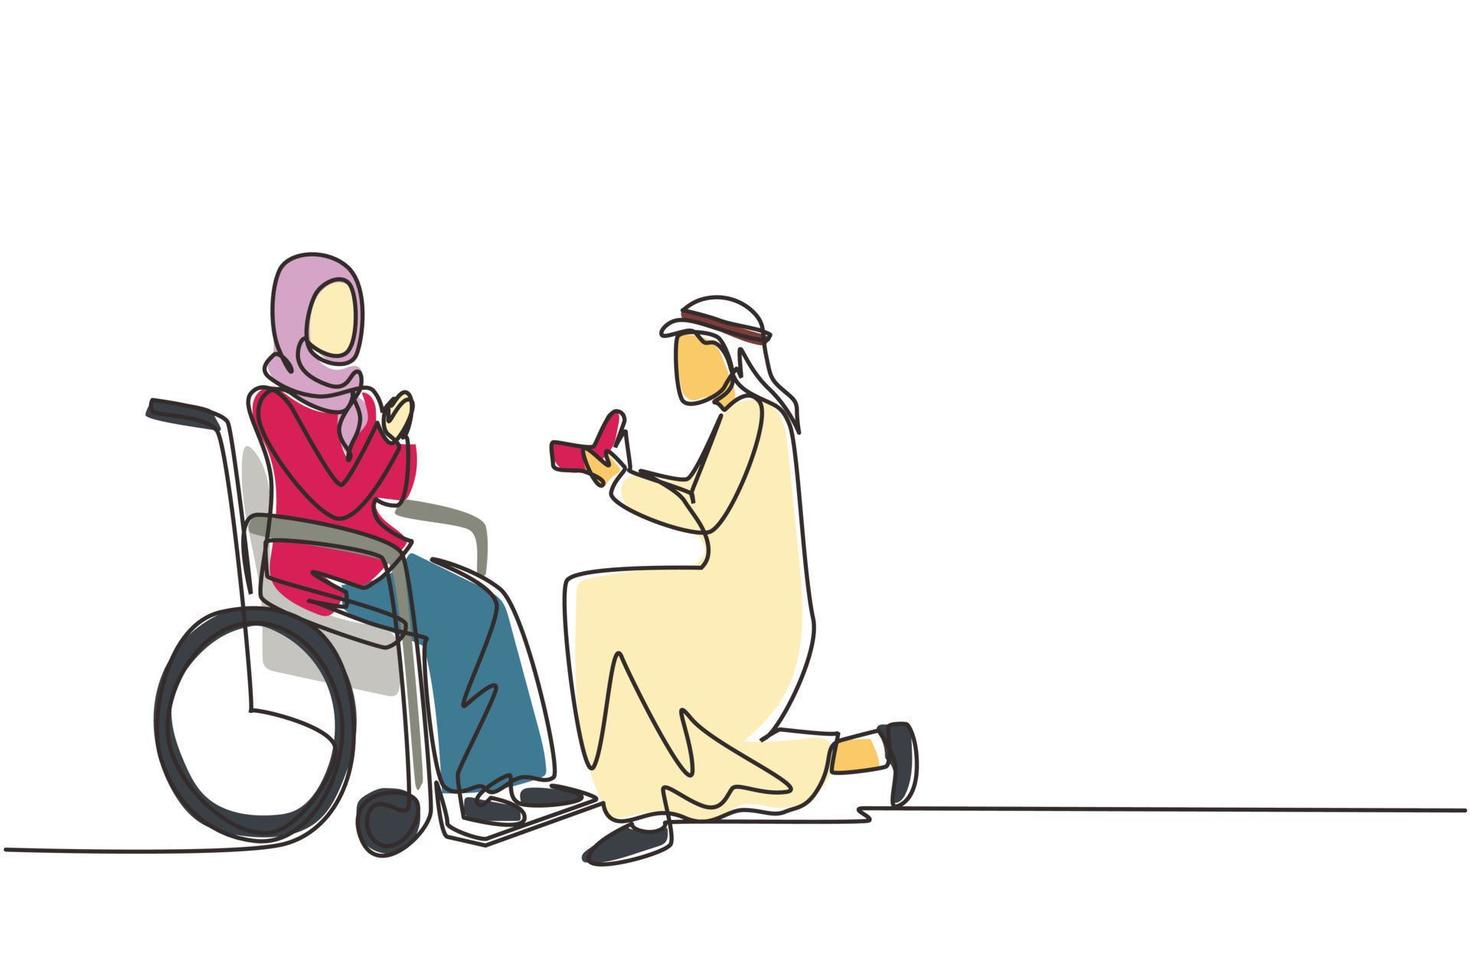 enkele doorlopende lijntekening Arabische man staat op knie met verlovingsring in handen voor gehandicapte vrouw zittend op rolstoel, liefdevolle relaties, persoon huwelijk. één lijn tekenen ontwerp vector